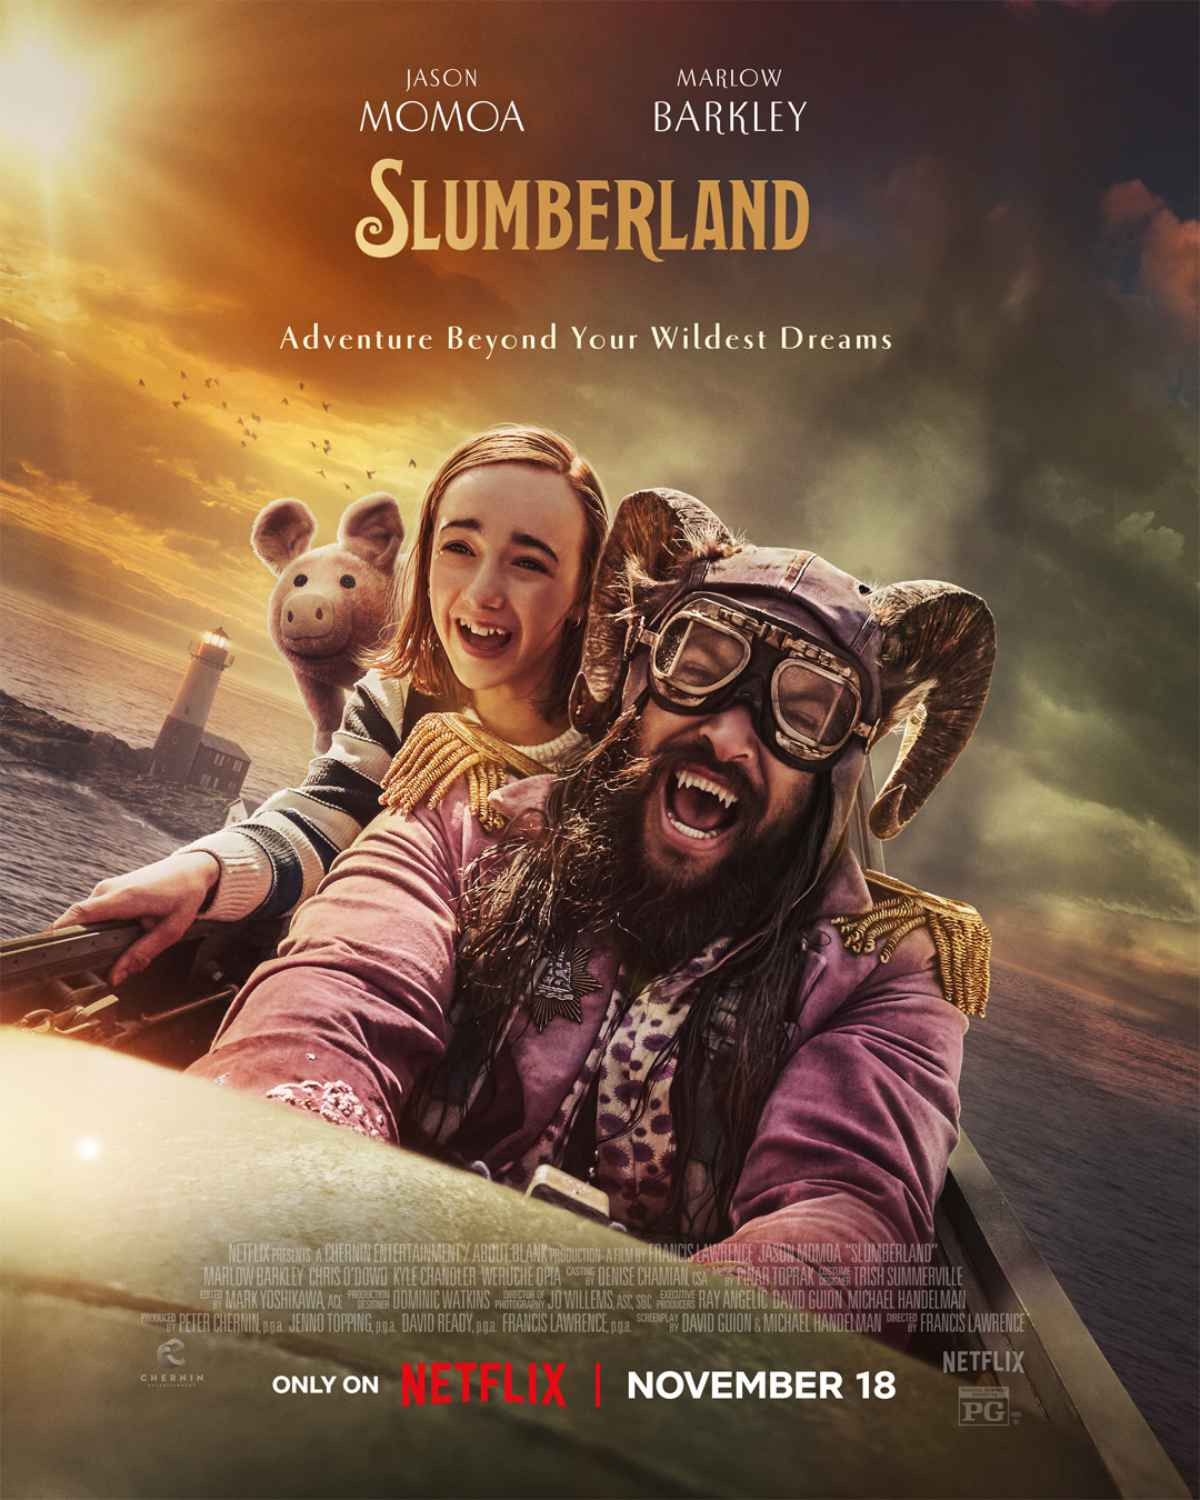 ดูหนังออนไลน์ฟรี Slumberland (2022) สลัมเบอร์แลนด์